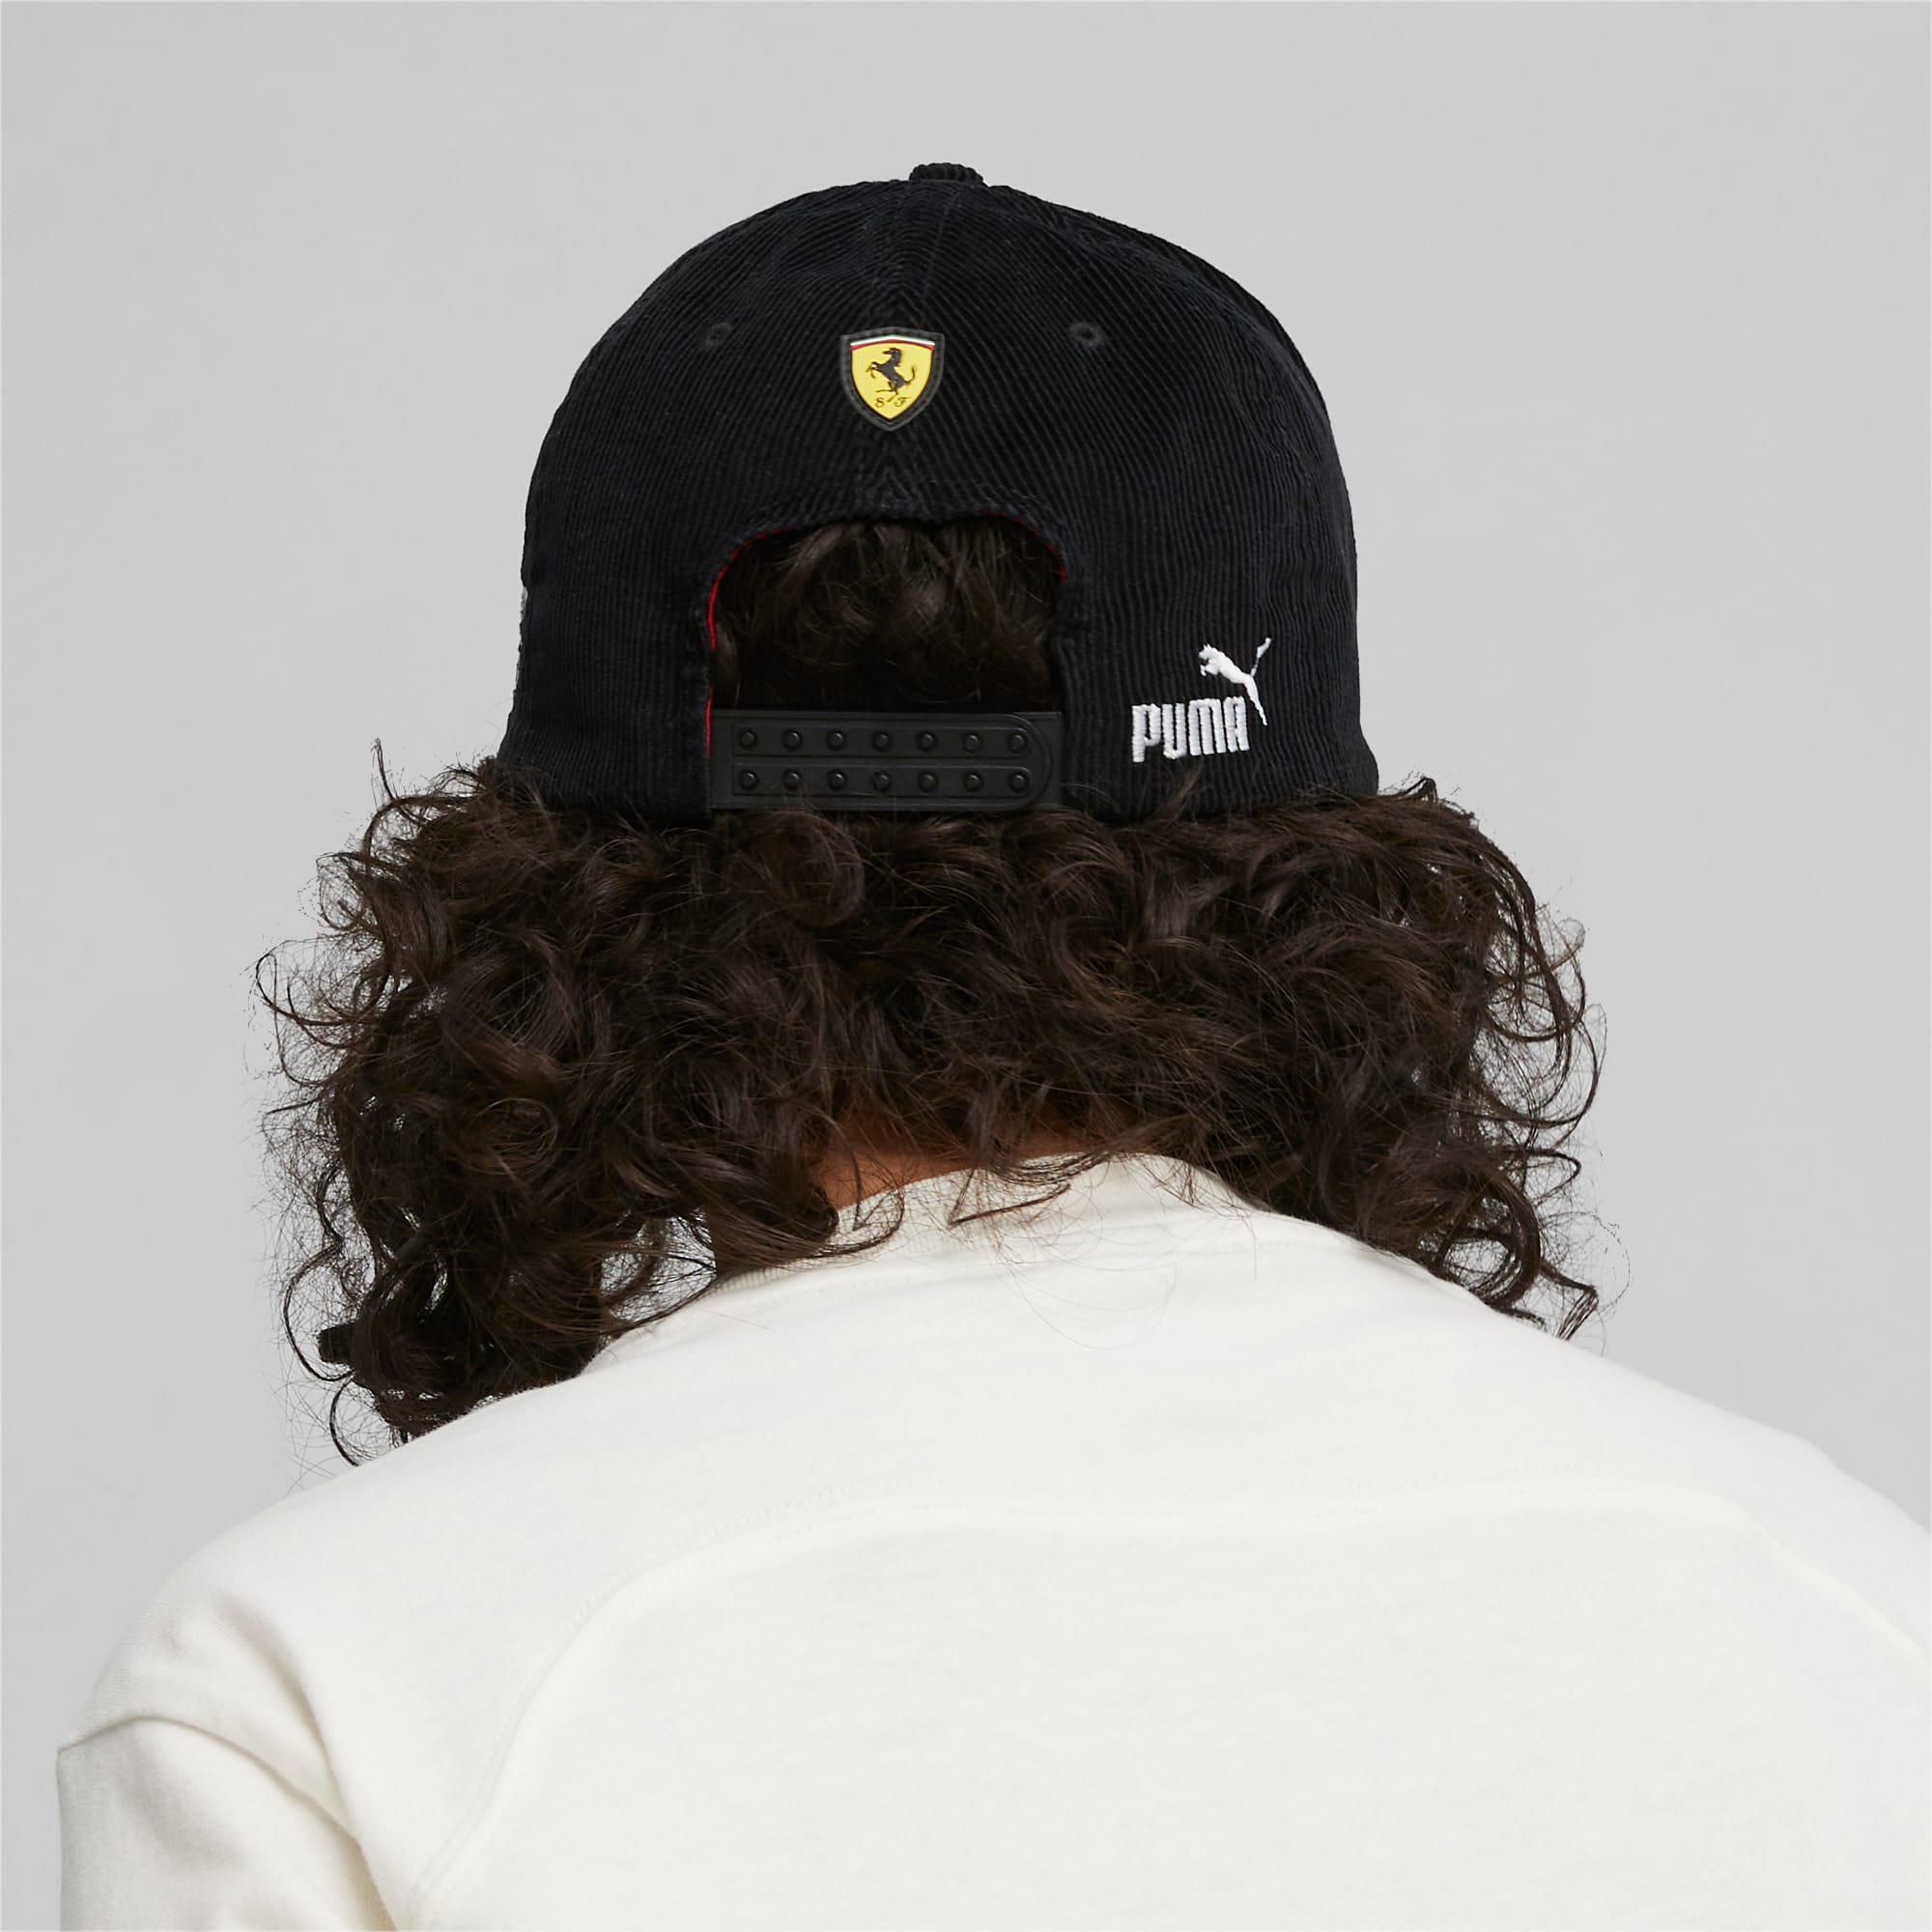 Scuderia Ferrari Garage Crew PUMA Cap | Baseball